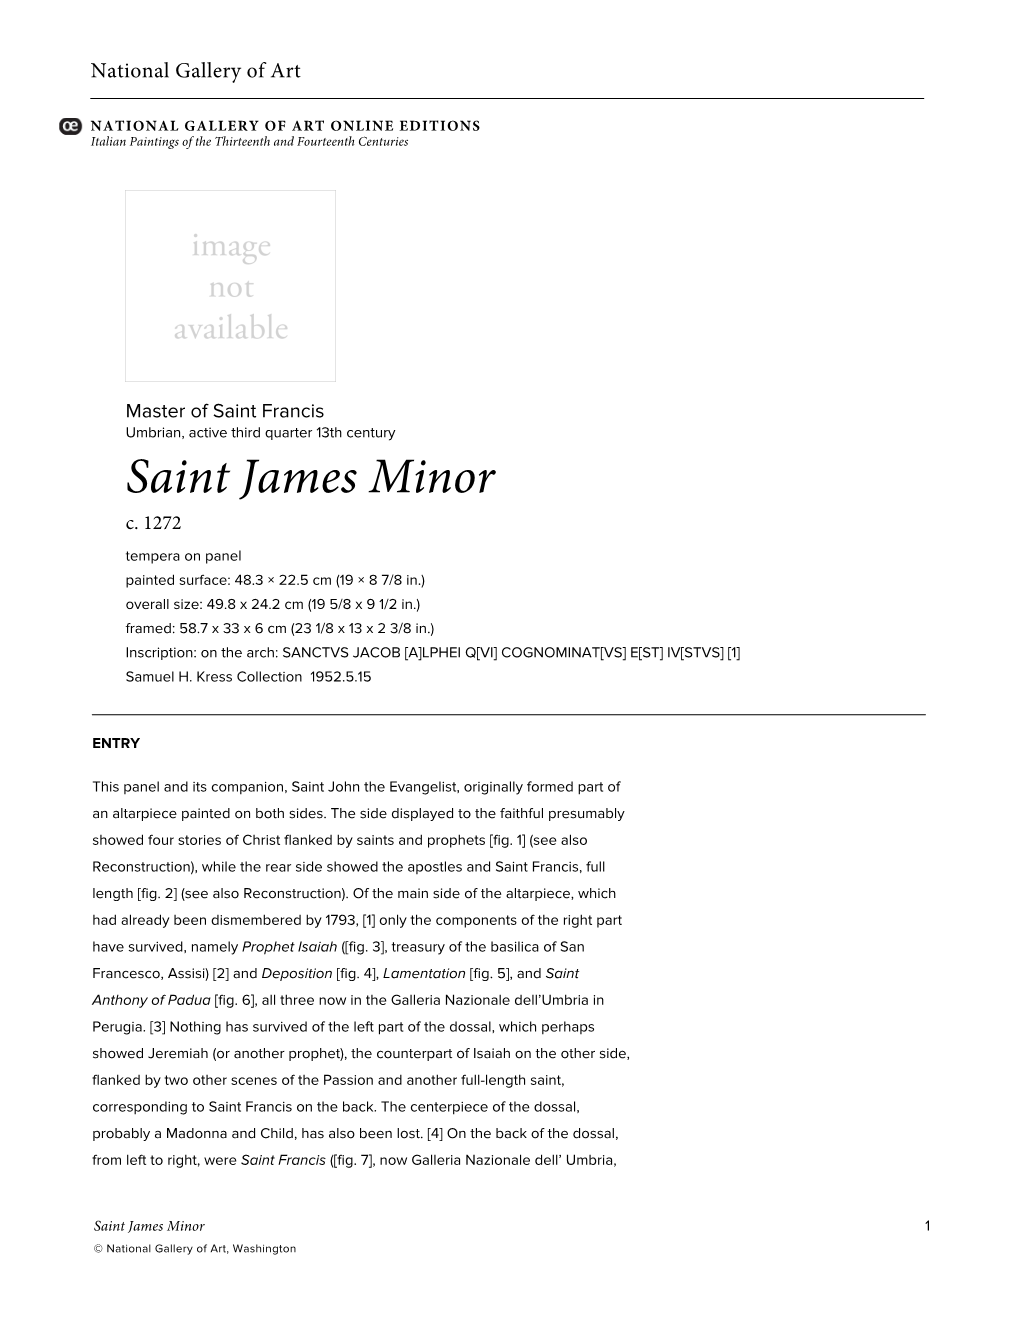 Saint James Minor C